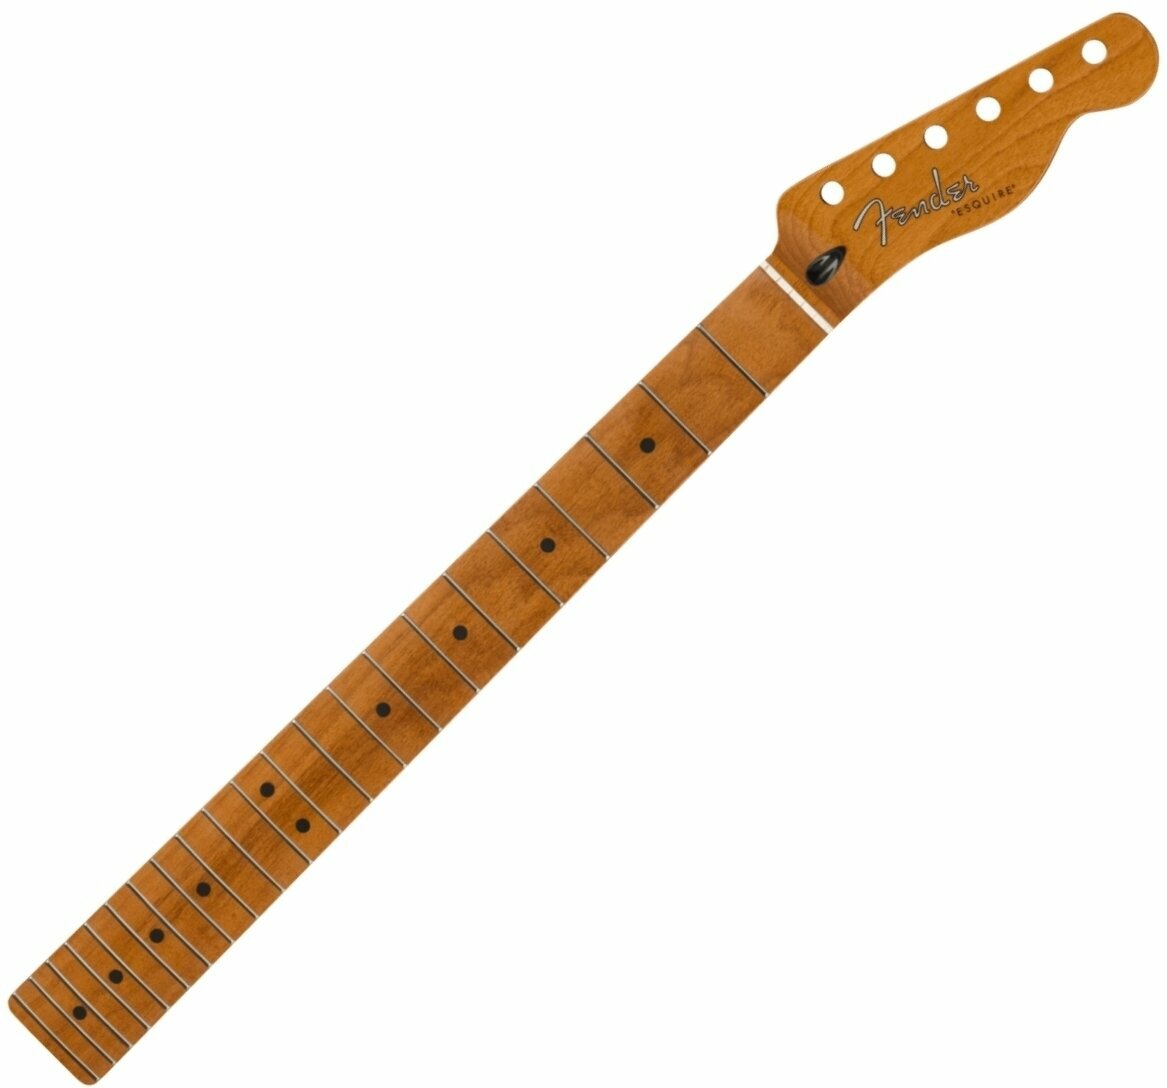 Kytarový krk Fender 50's Modified Esquire 22 Žíhaný javor (Roasted Maple) Kytarový krk